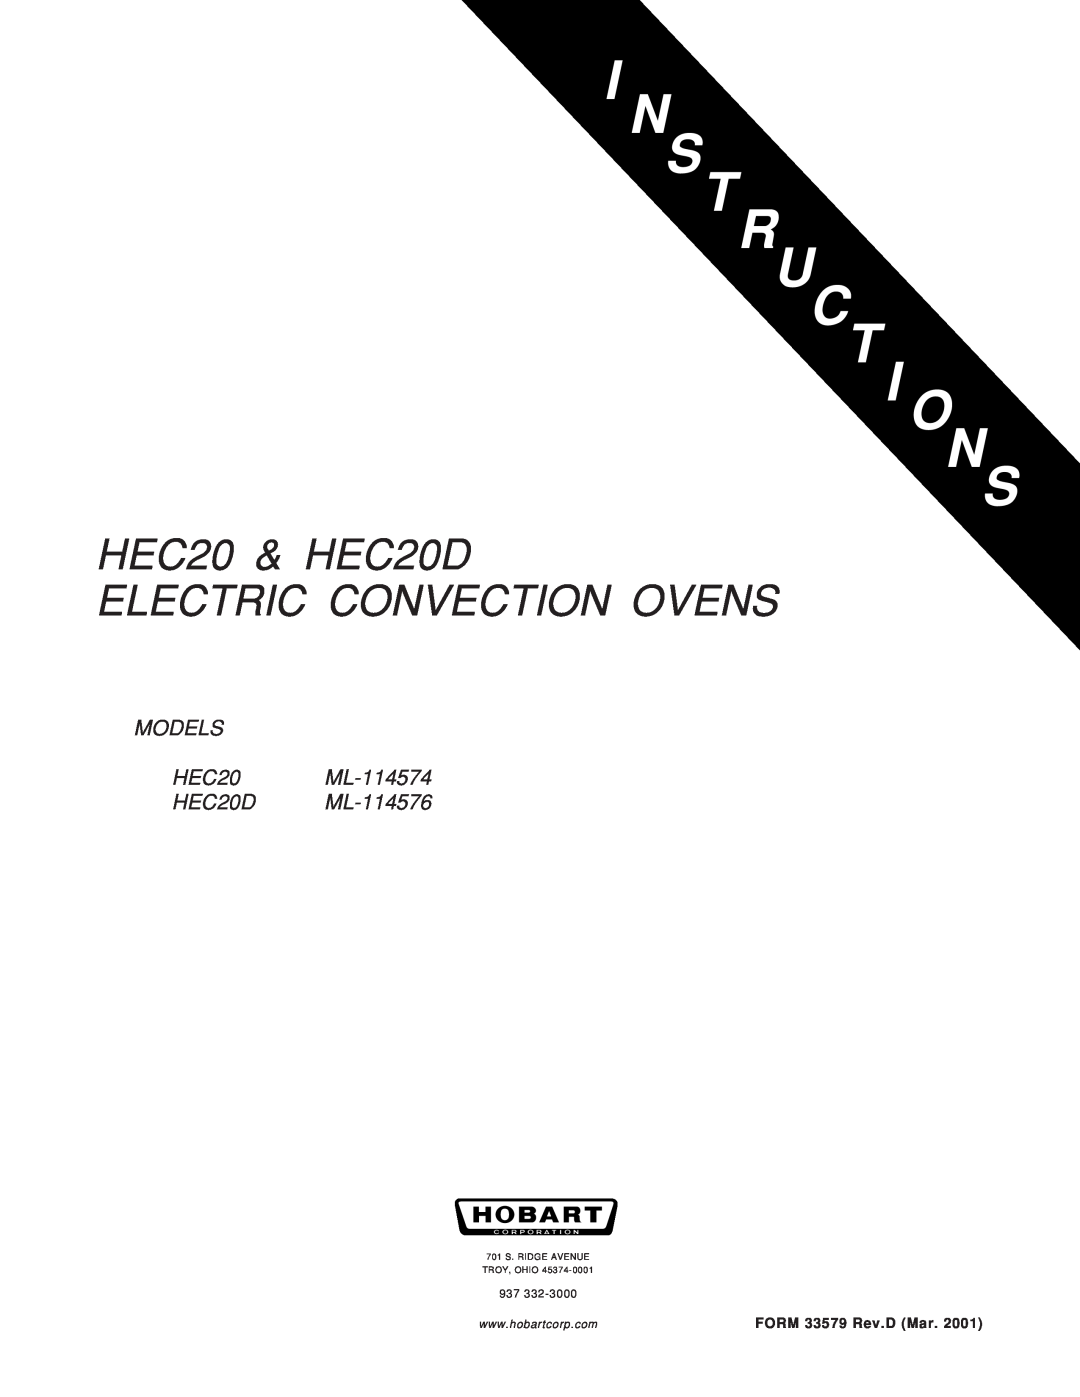 Hobart HEC20 ML-114574 manual N S Truct I Ons, HEC20 & HEC20D, Electric Convection Ovens, FORM 33579 Rev.D Mar 